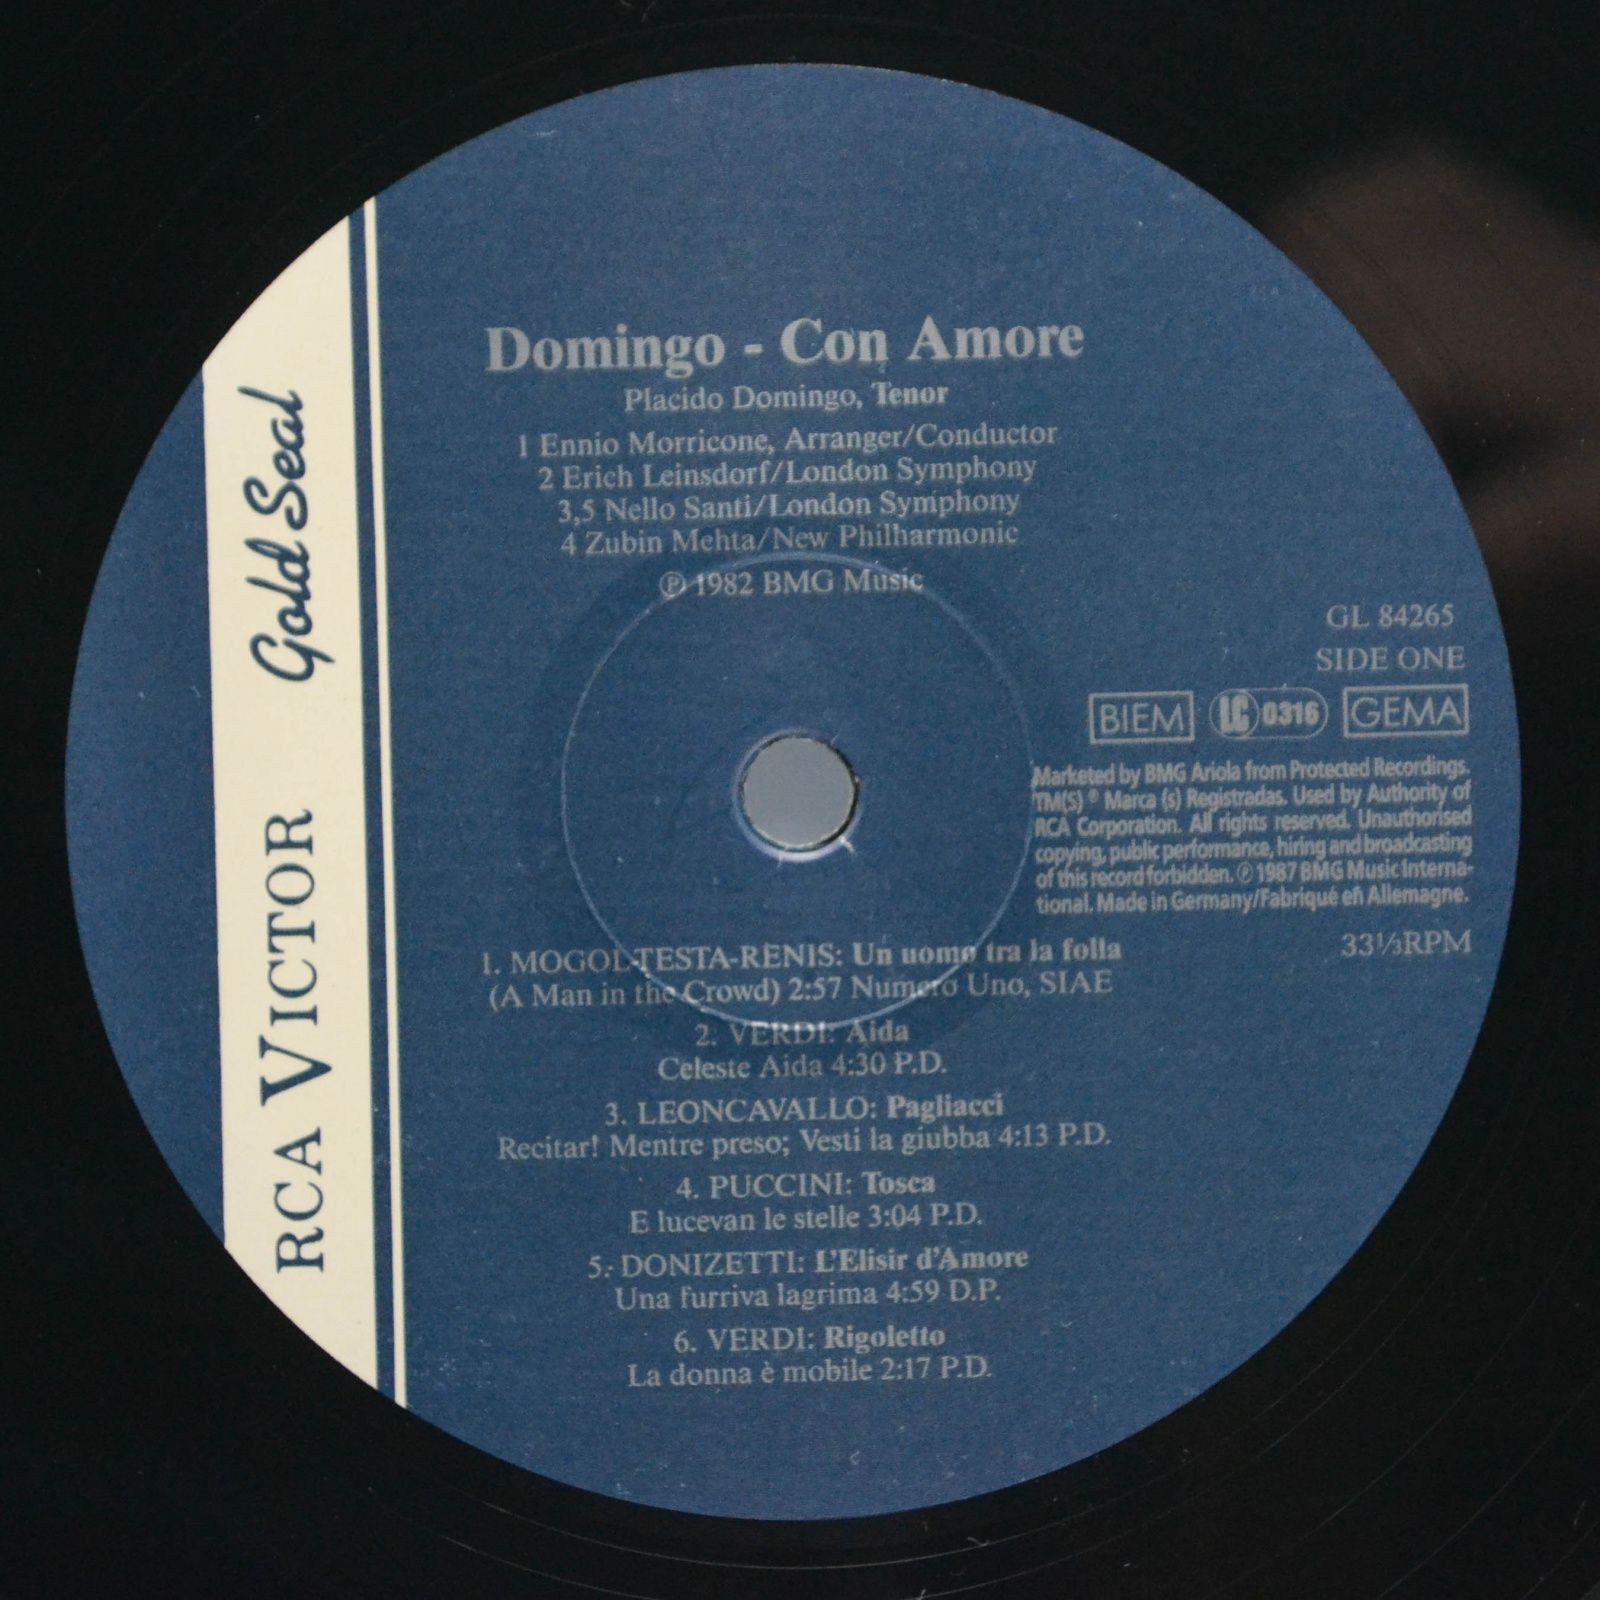 Placido Domingo — Domingo: Con Amore, 1988